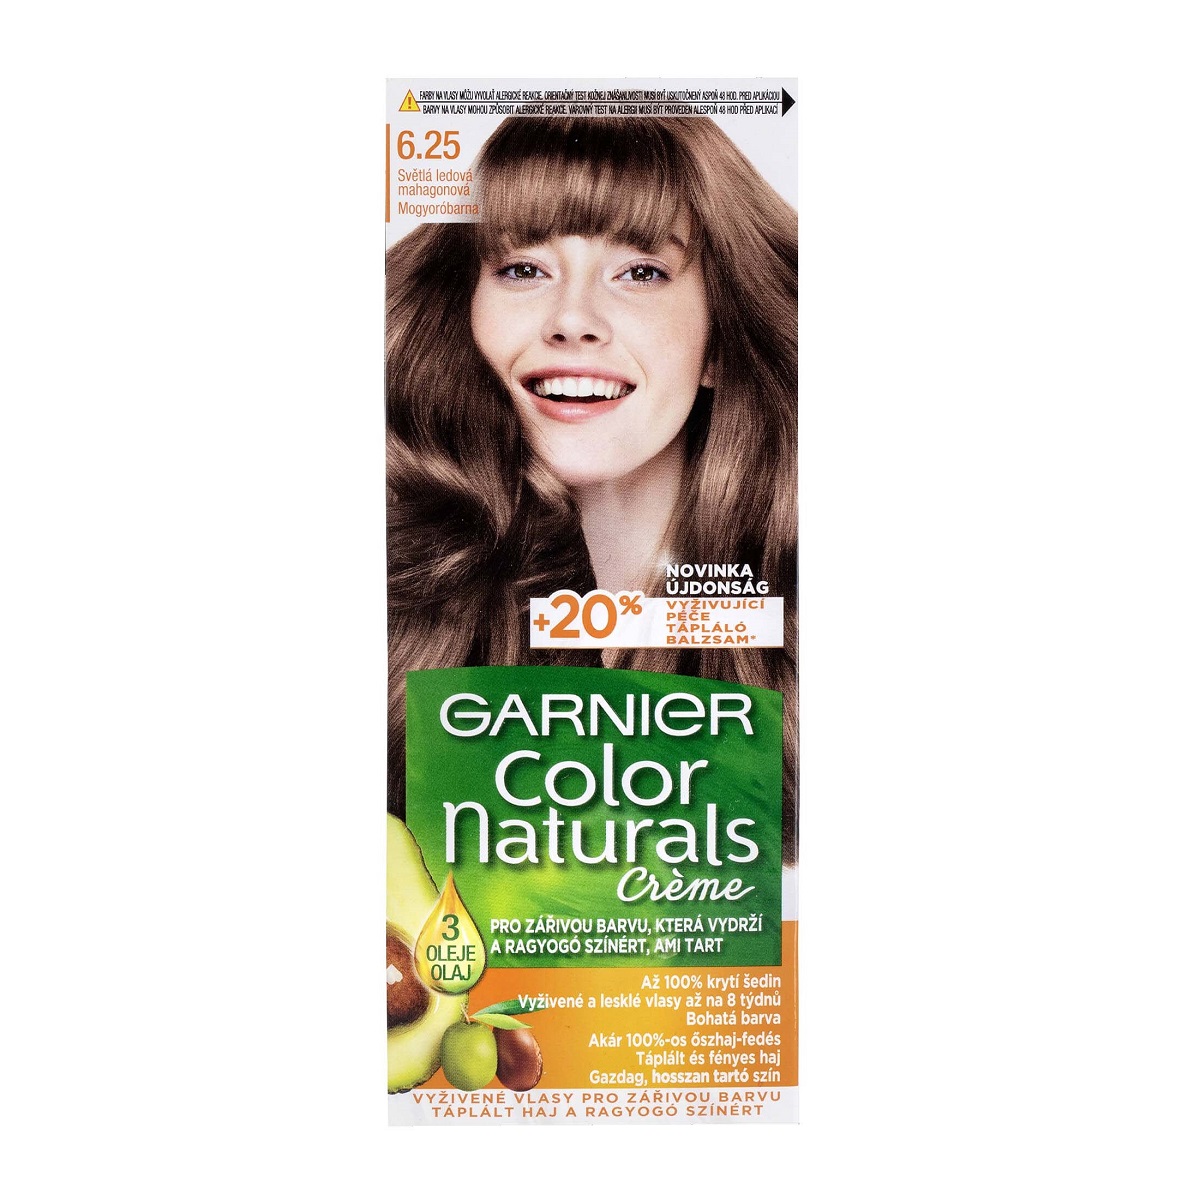 کیت رنگ مو گارنیر سری Color Naturals شماره 6.25